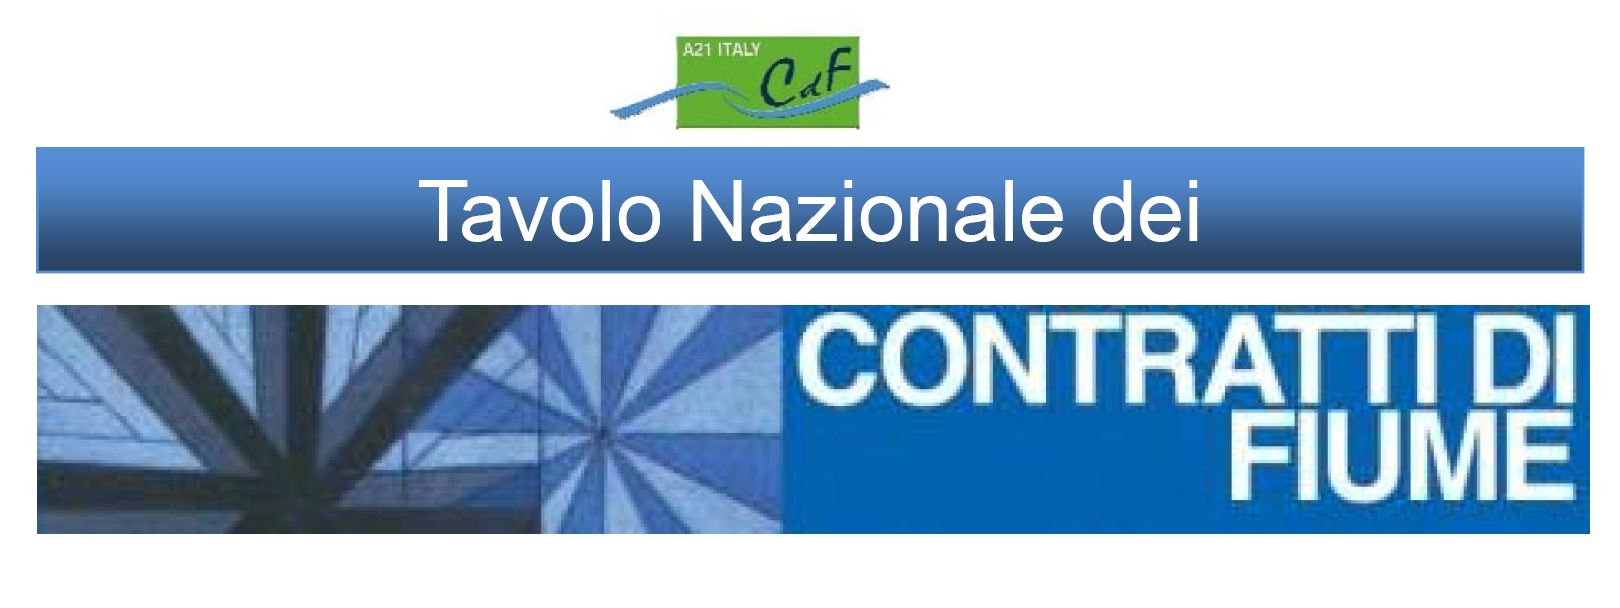 Il XII Tavolo Nazionale dei Contratti di Fiume si terrà a Napoli il 18 e 19 dicembre